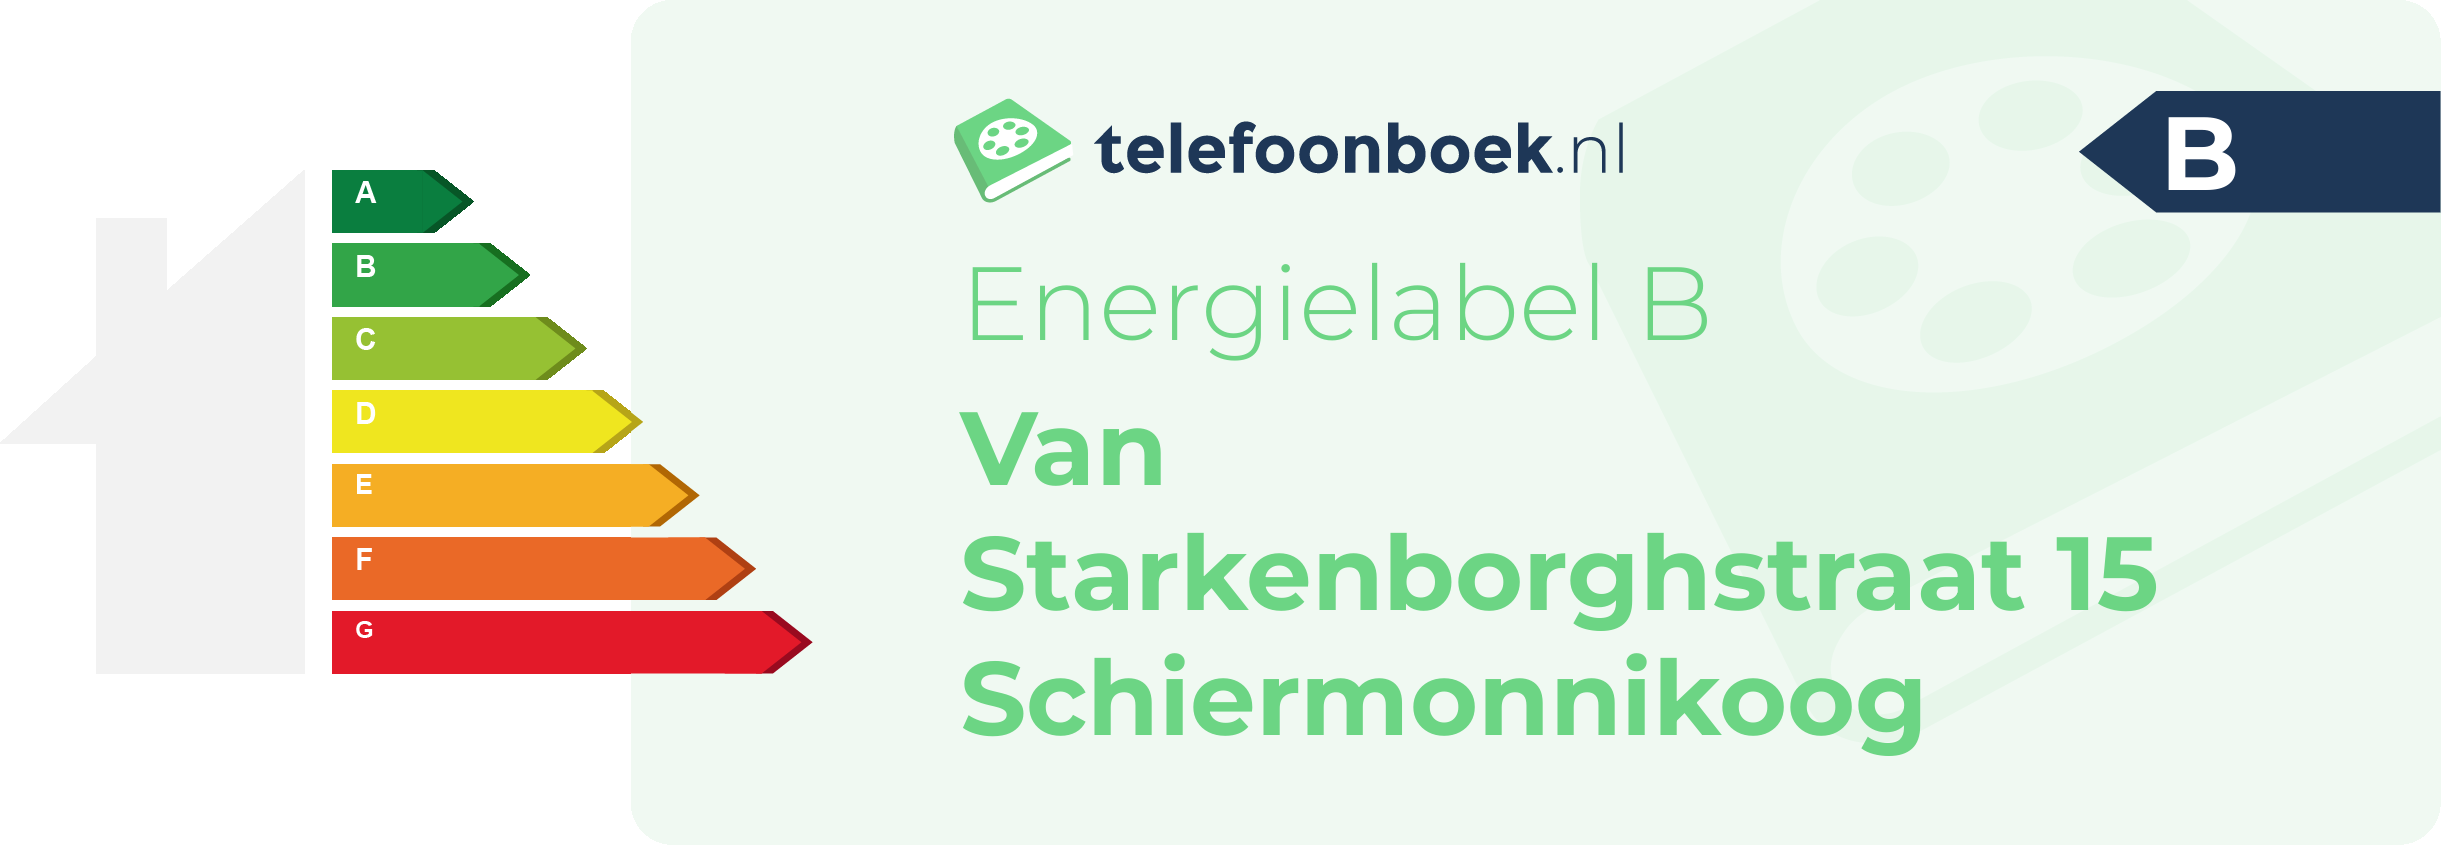 Energielabel Van Starkenborghstraat 15 Schiermonnikoog